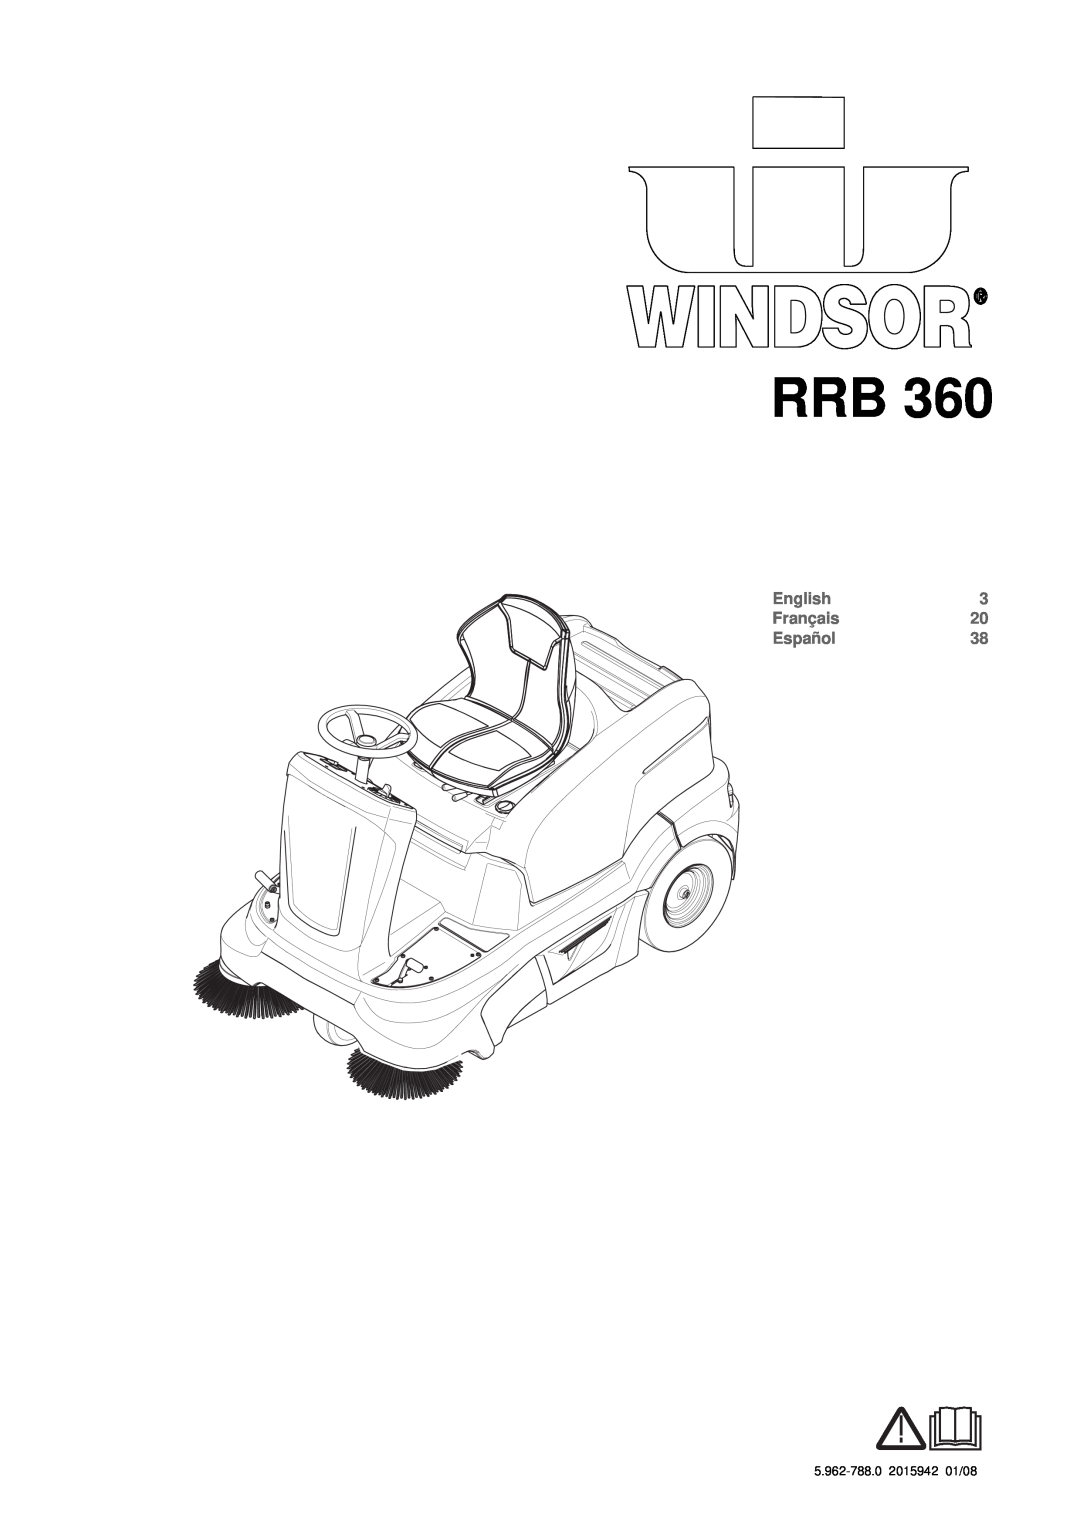 Windsor RRB 360 manual English, Français, Español, 5.962-788.02015942 01/08 